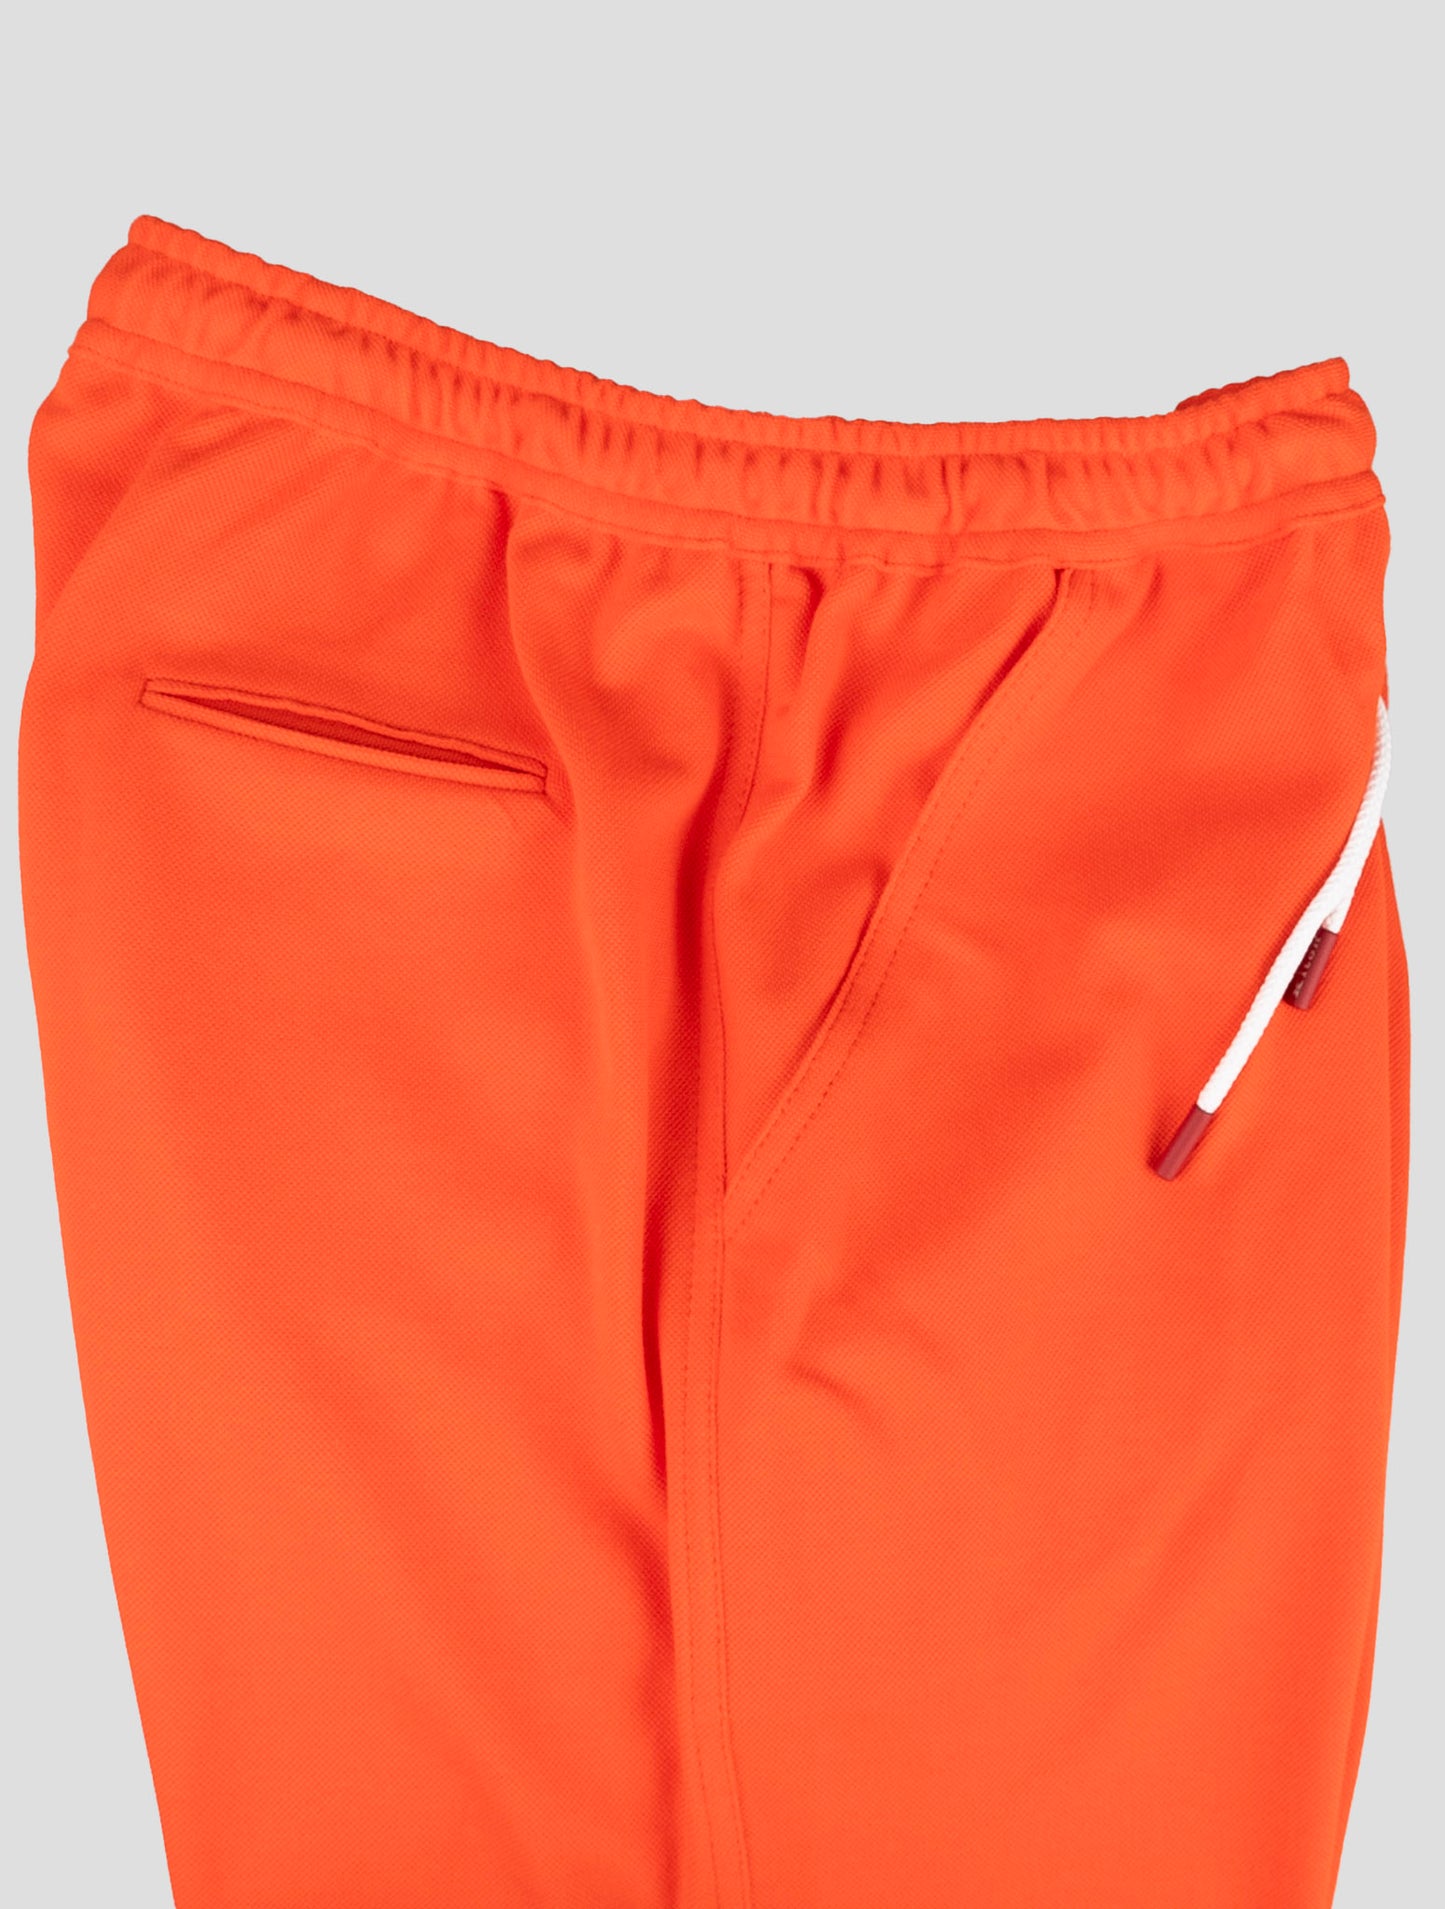 Kiton Odgovarajuća odjeća - plava trenirka Mariano i narančaste kratke hlače